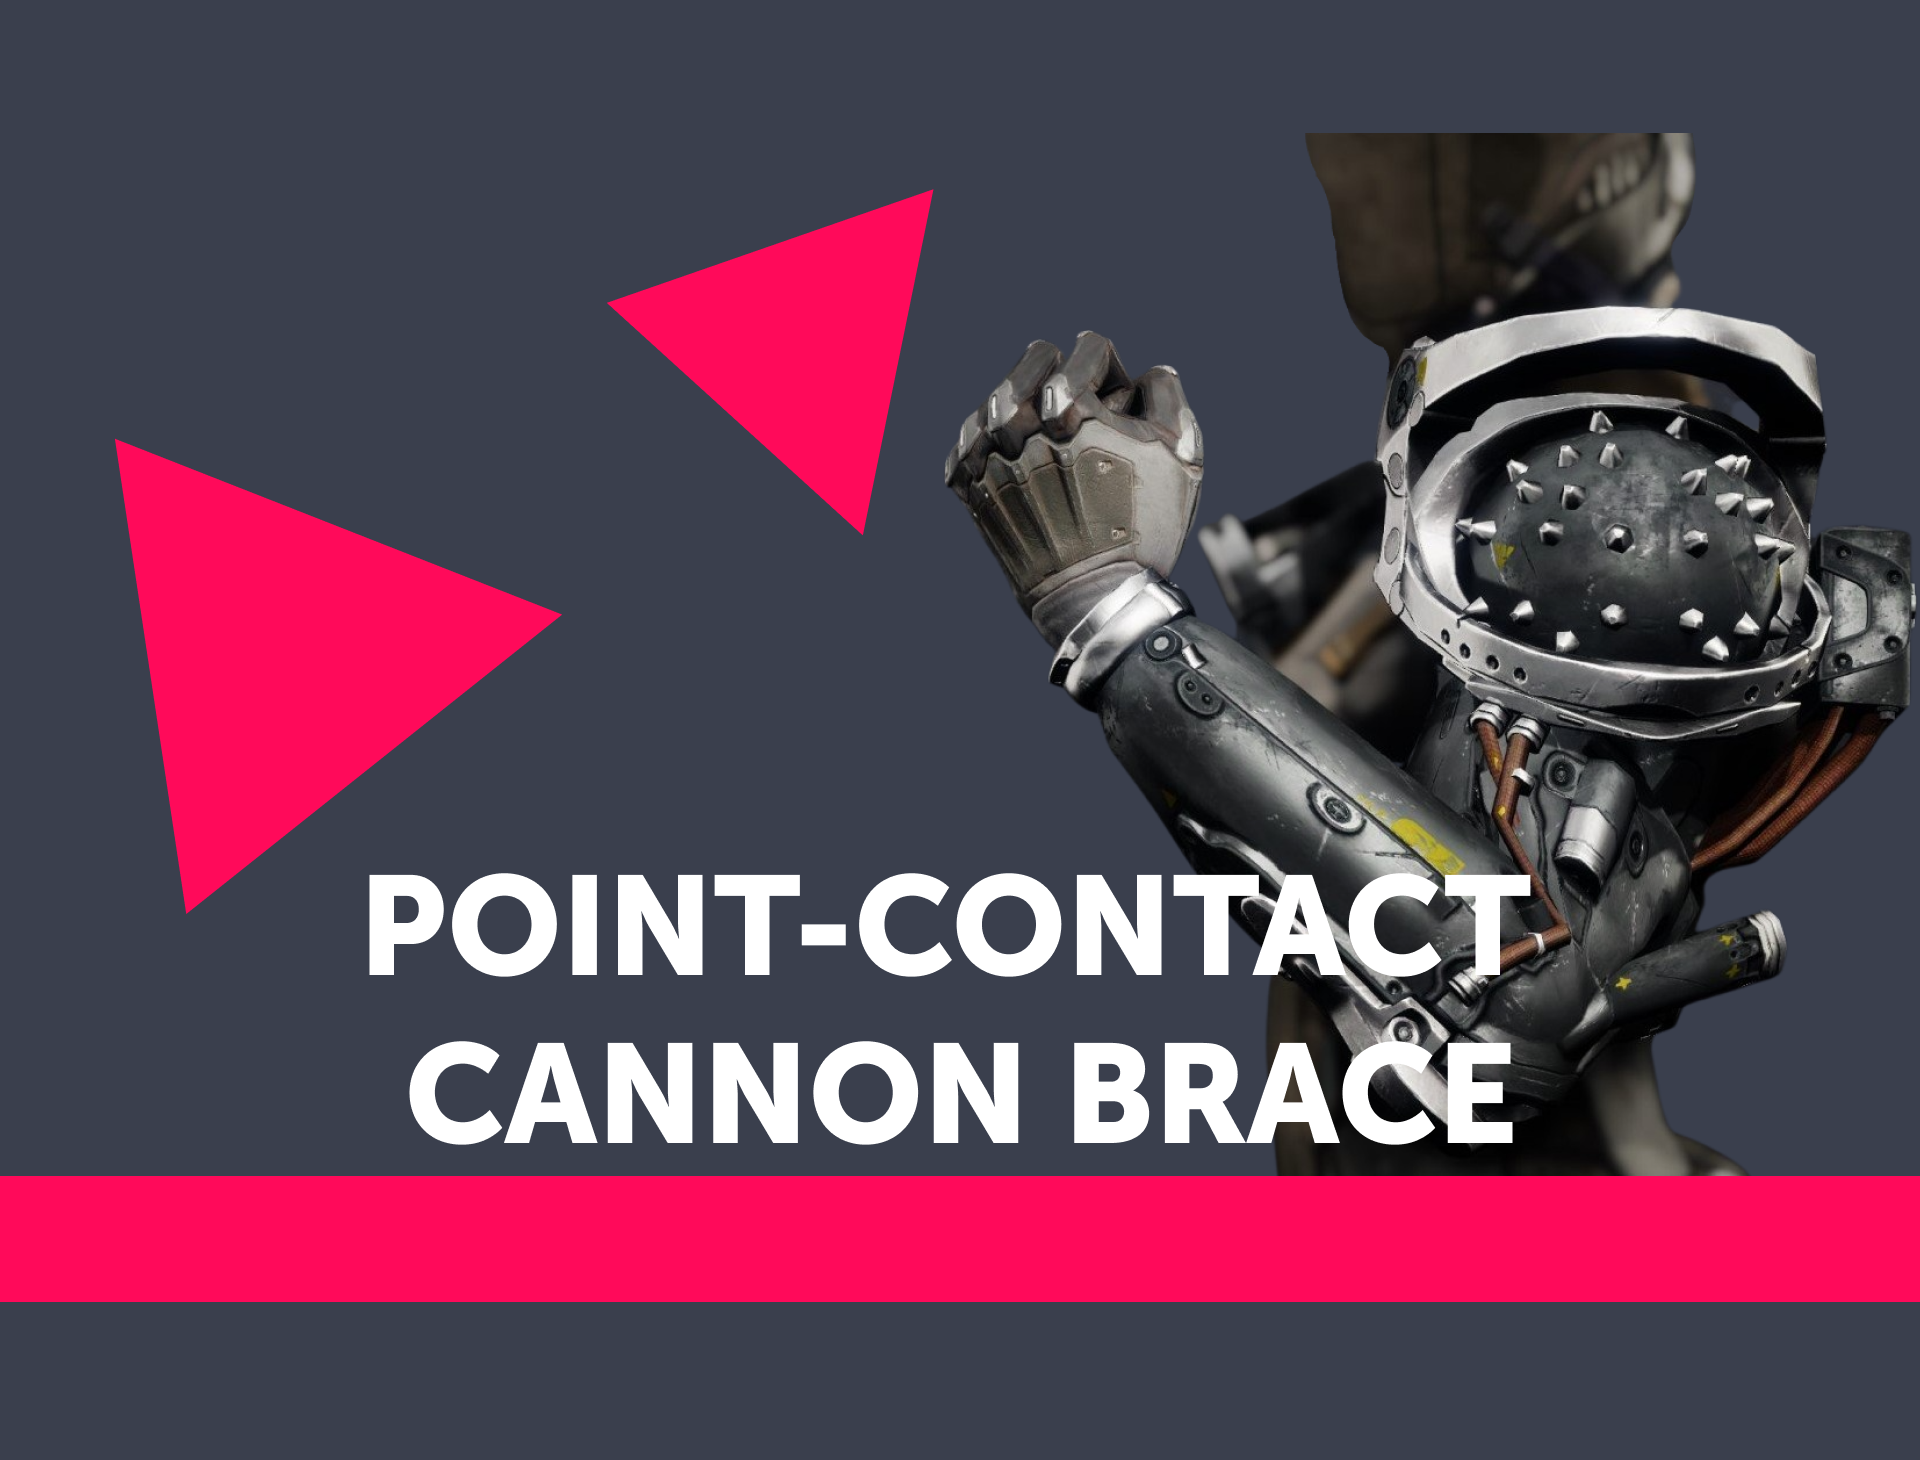 Buy Destiny 2 Point Contact Cannon Brace Titan Gauntlet - LFCarry